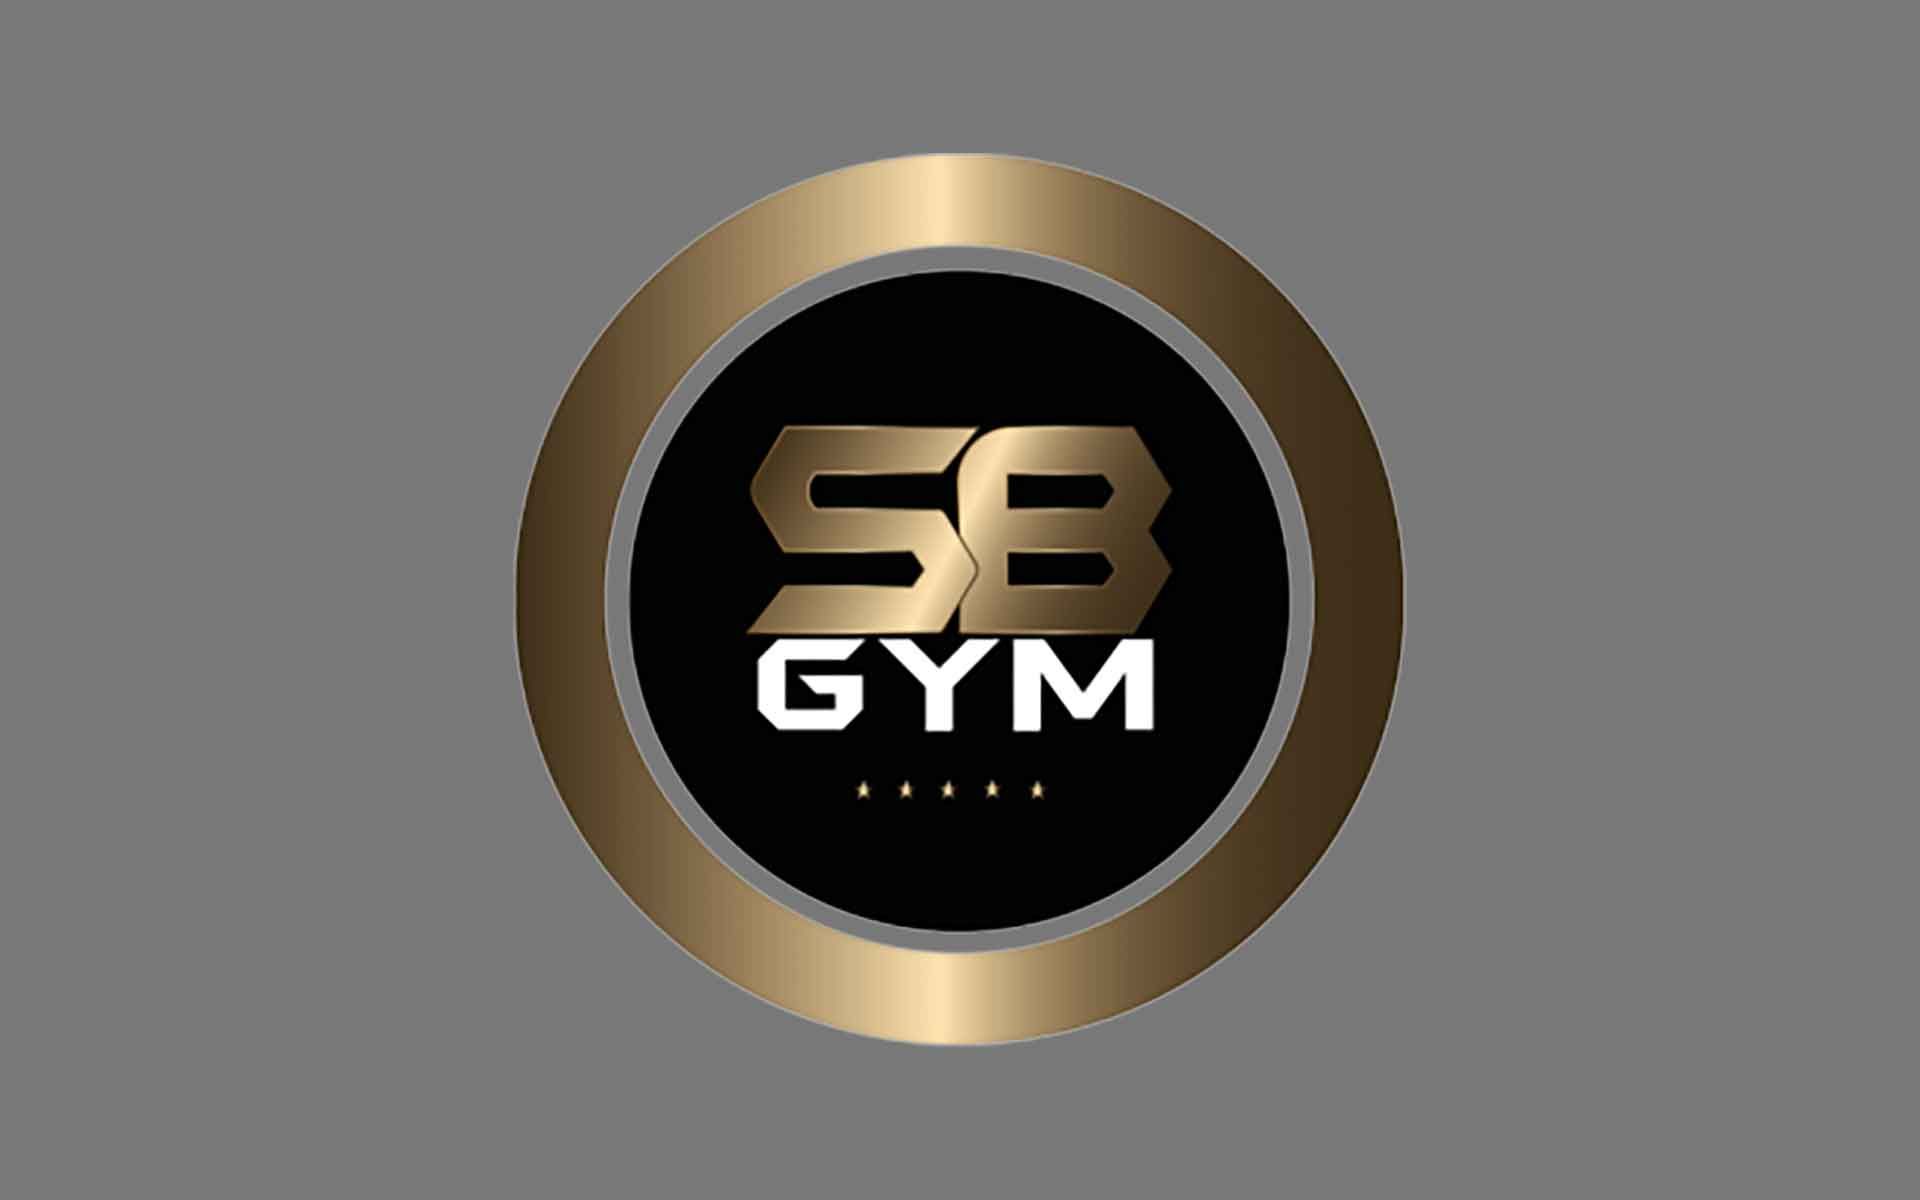 SB Gym